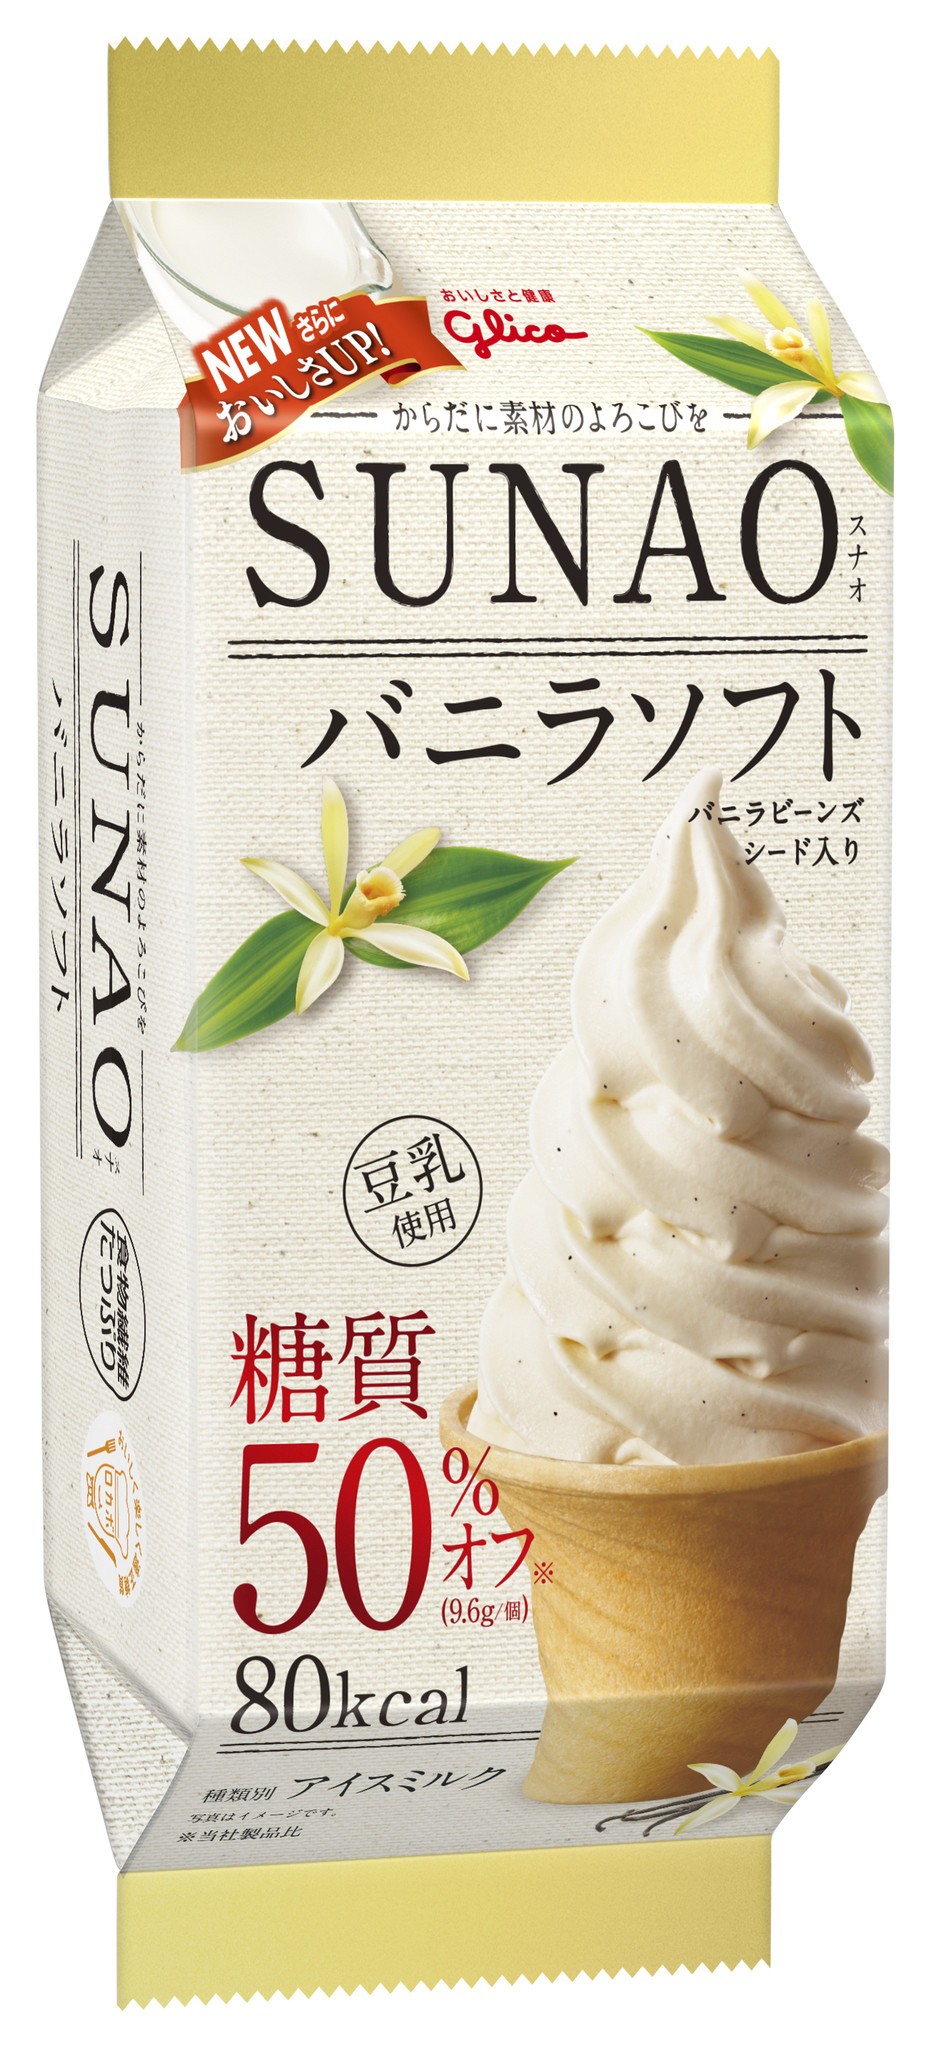 糖質を抑えた菓子ブランド「SUNAO」